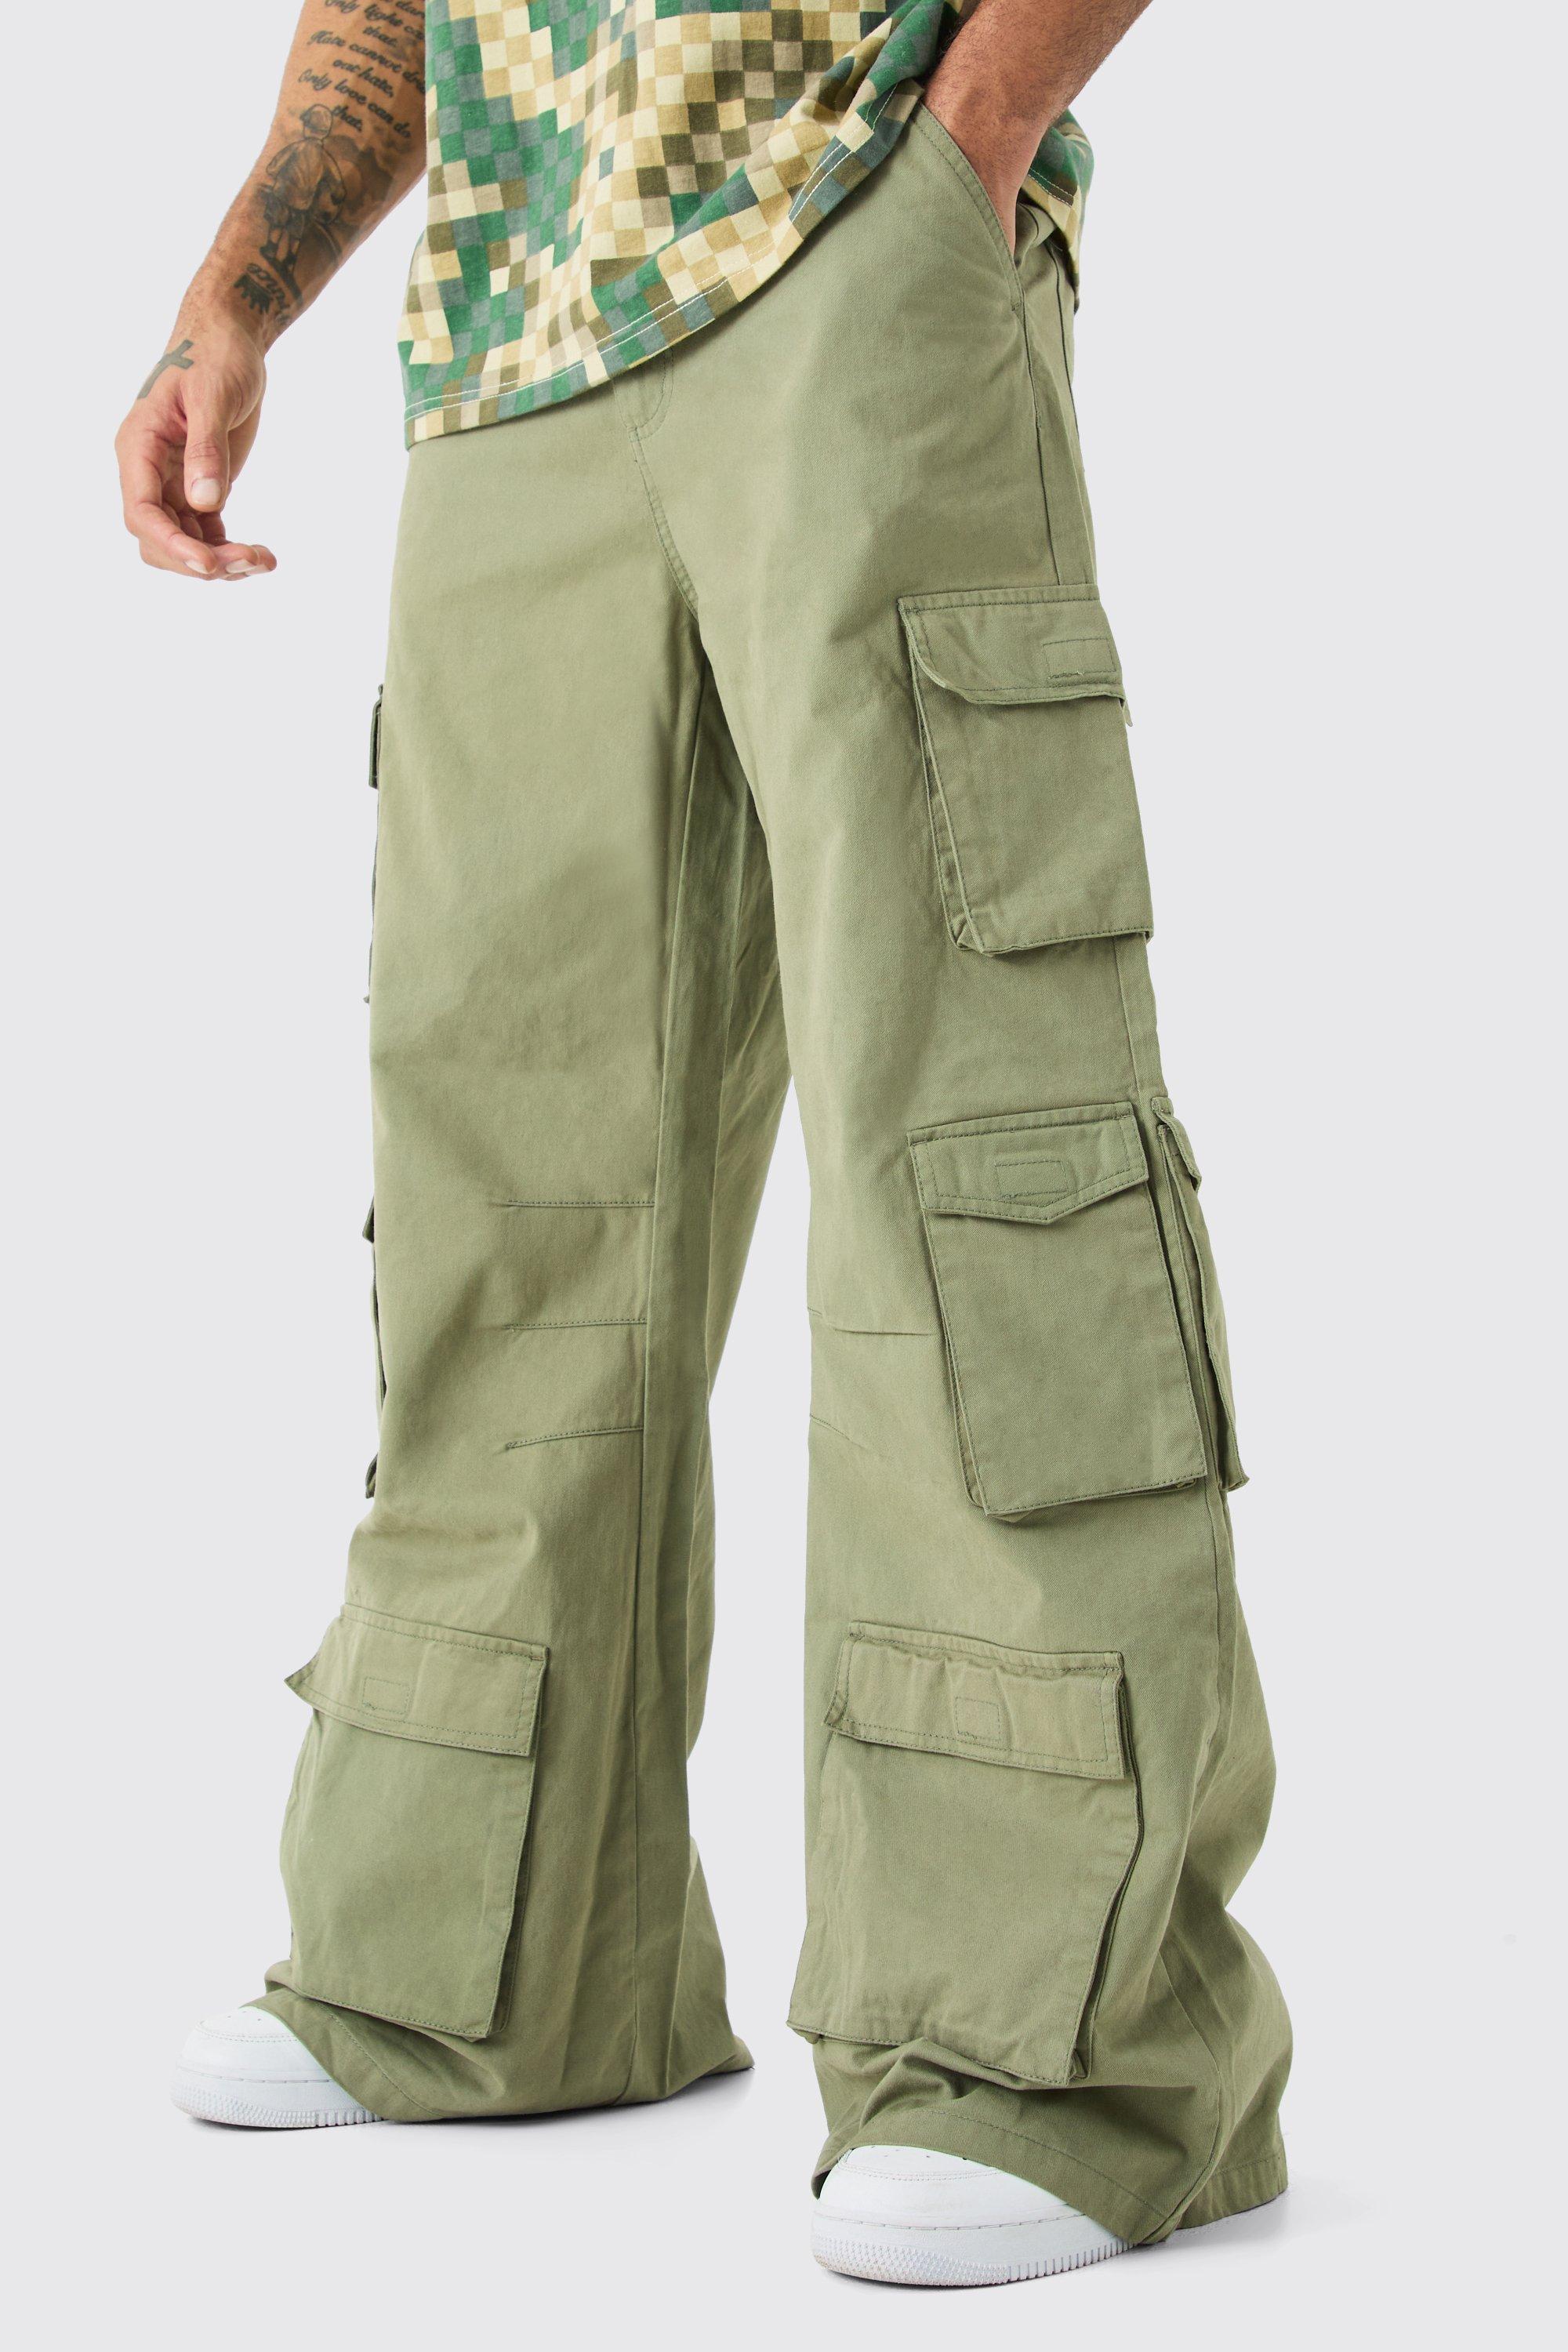 Image of Pantaloni super comodi in denim rigido con tasche Cargo multiple, Verde